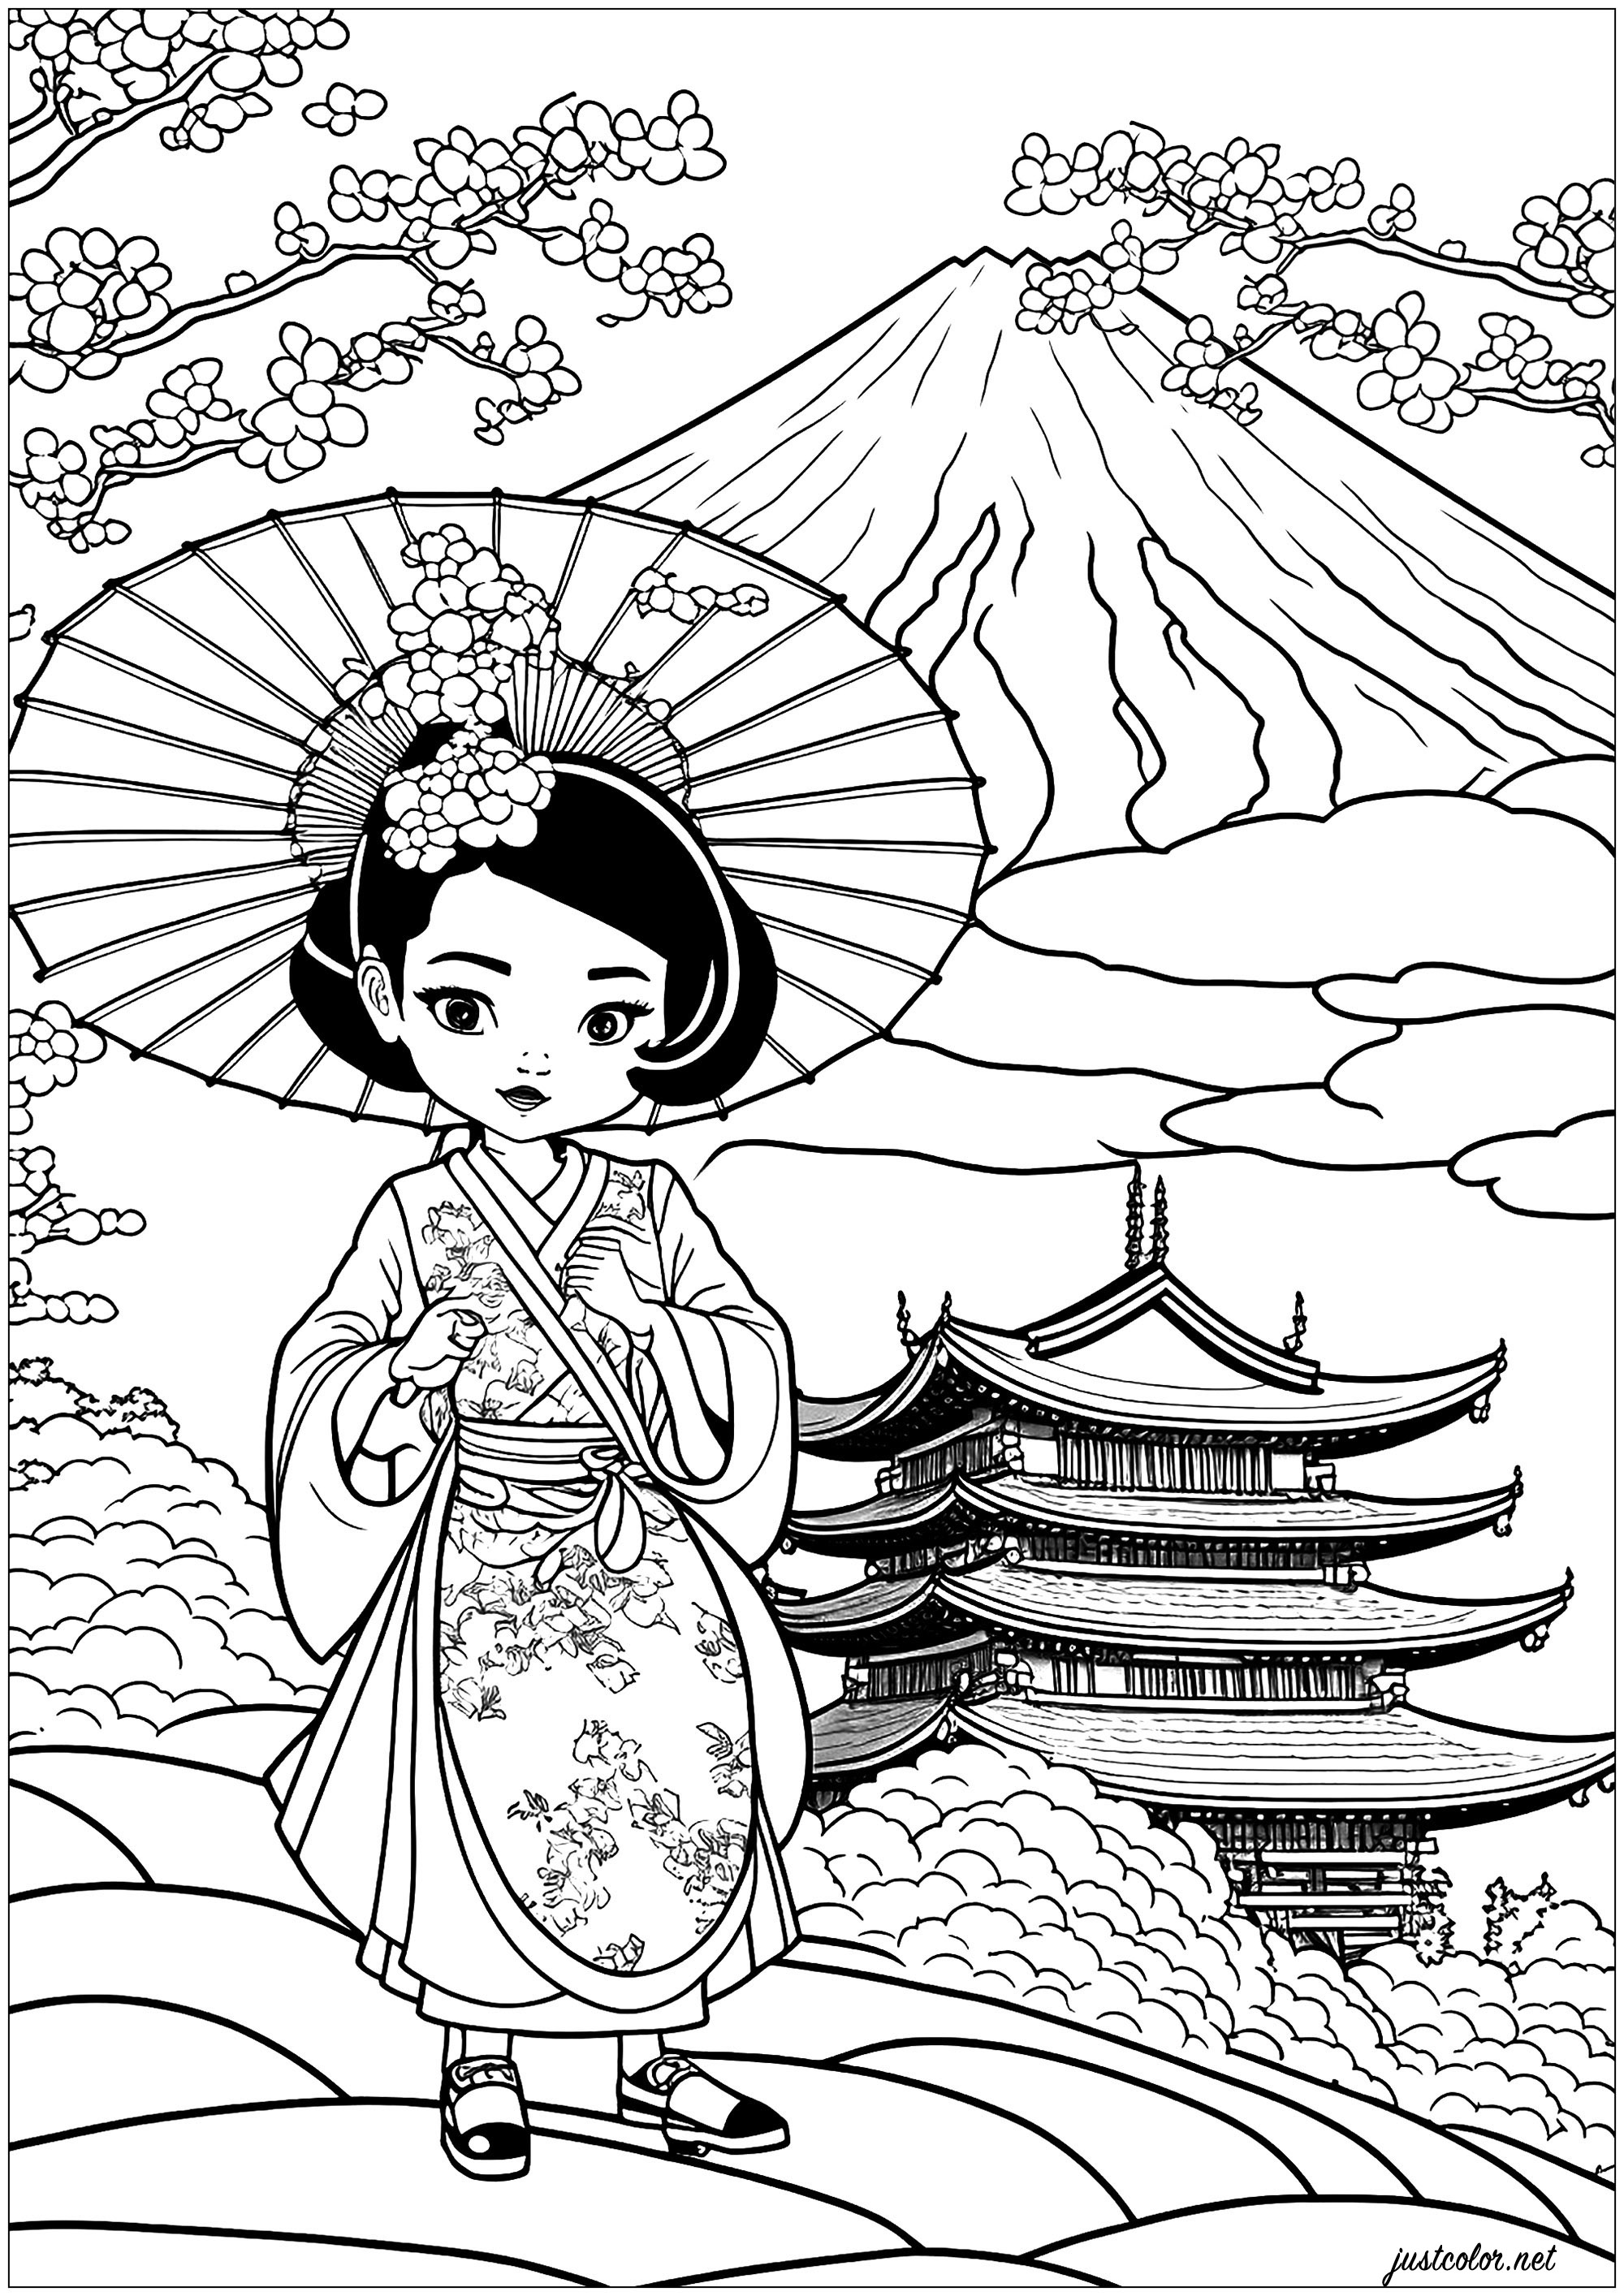 Dibujos para colorear de Geishas. Una compleja página para colorear con una hermosa Geisha en su hermoso kimono, y un magnífico paisaje japonés.